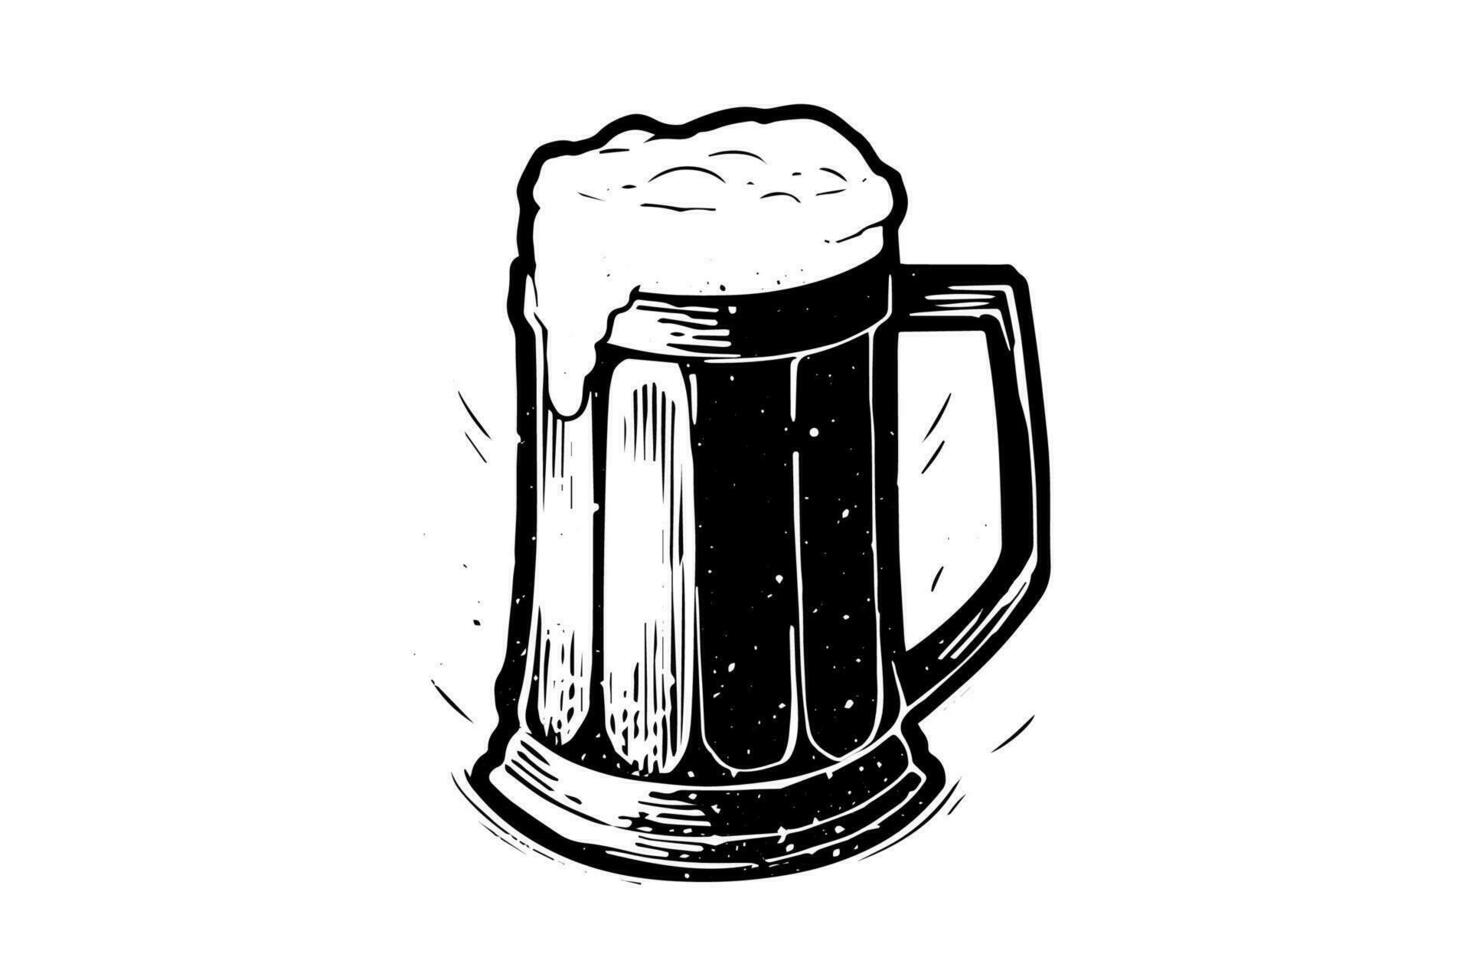 cerveza vaso con cerveza inglesa y lozano mano.de.espuma dibujado tinta bosquejo. grabado Clásico estilo vector ilustración.